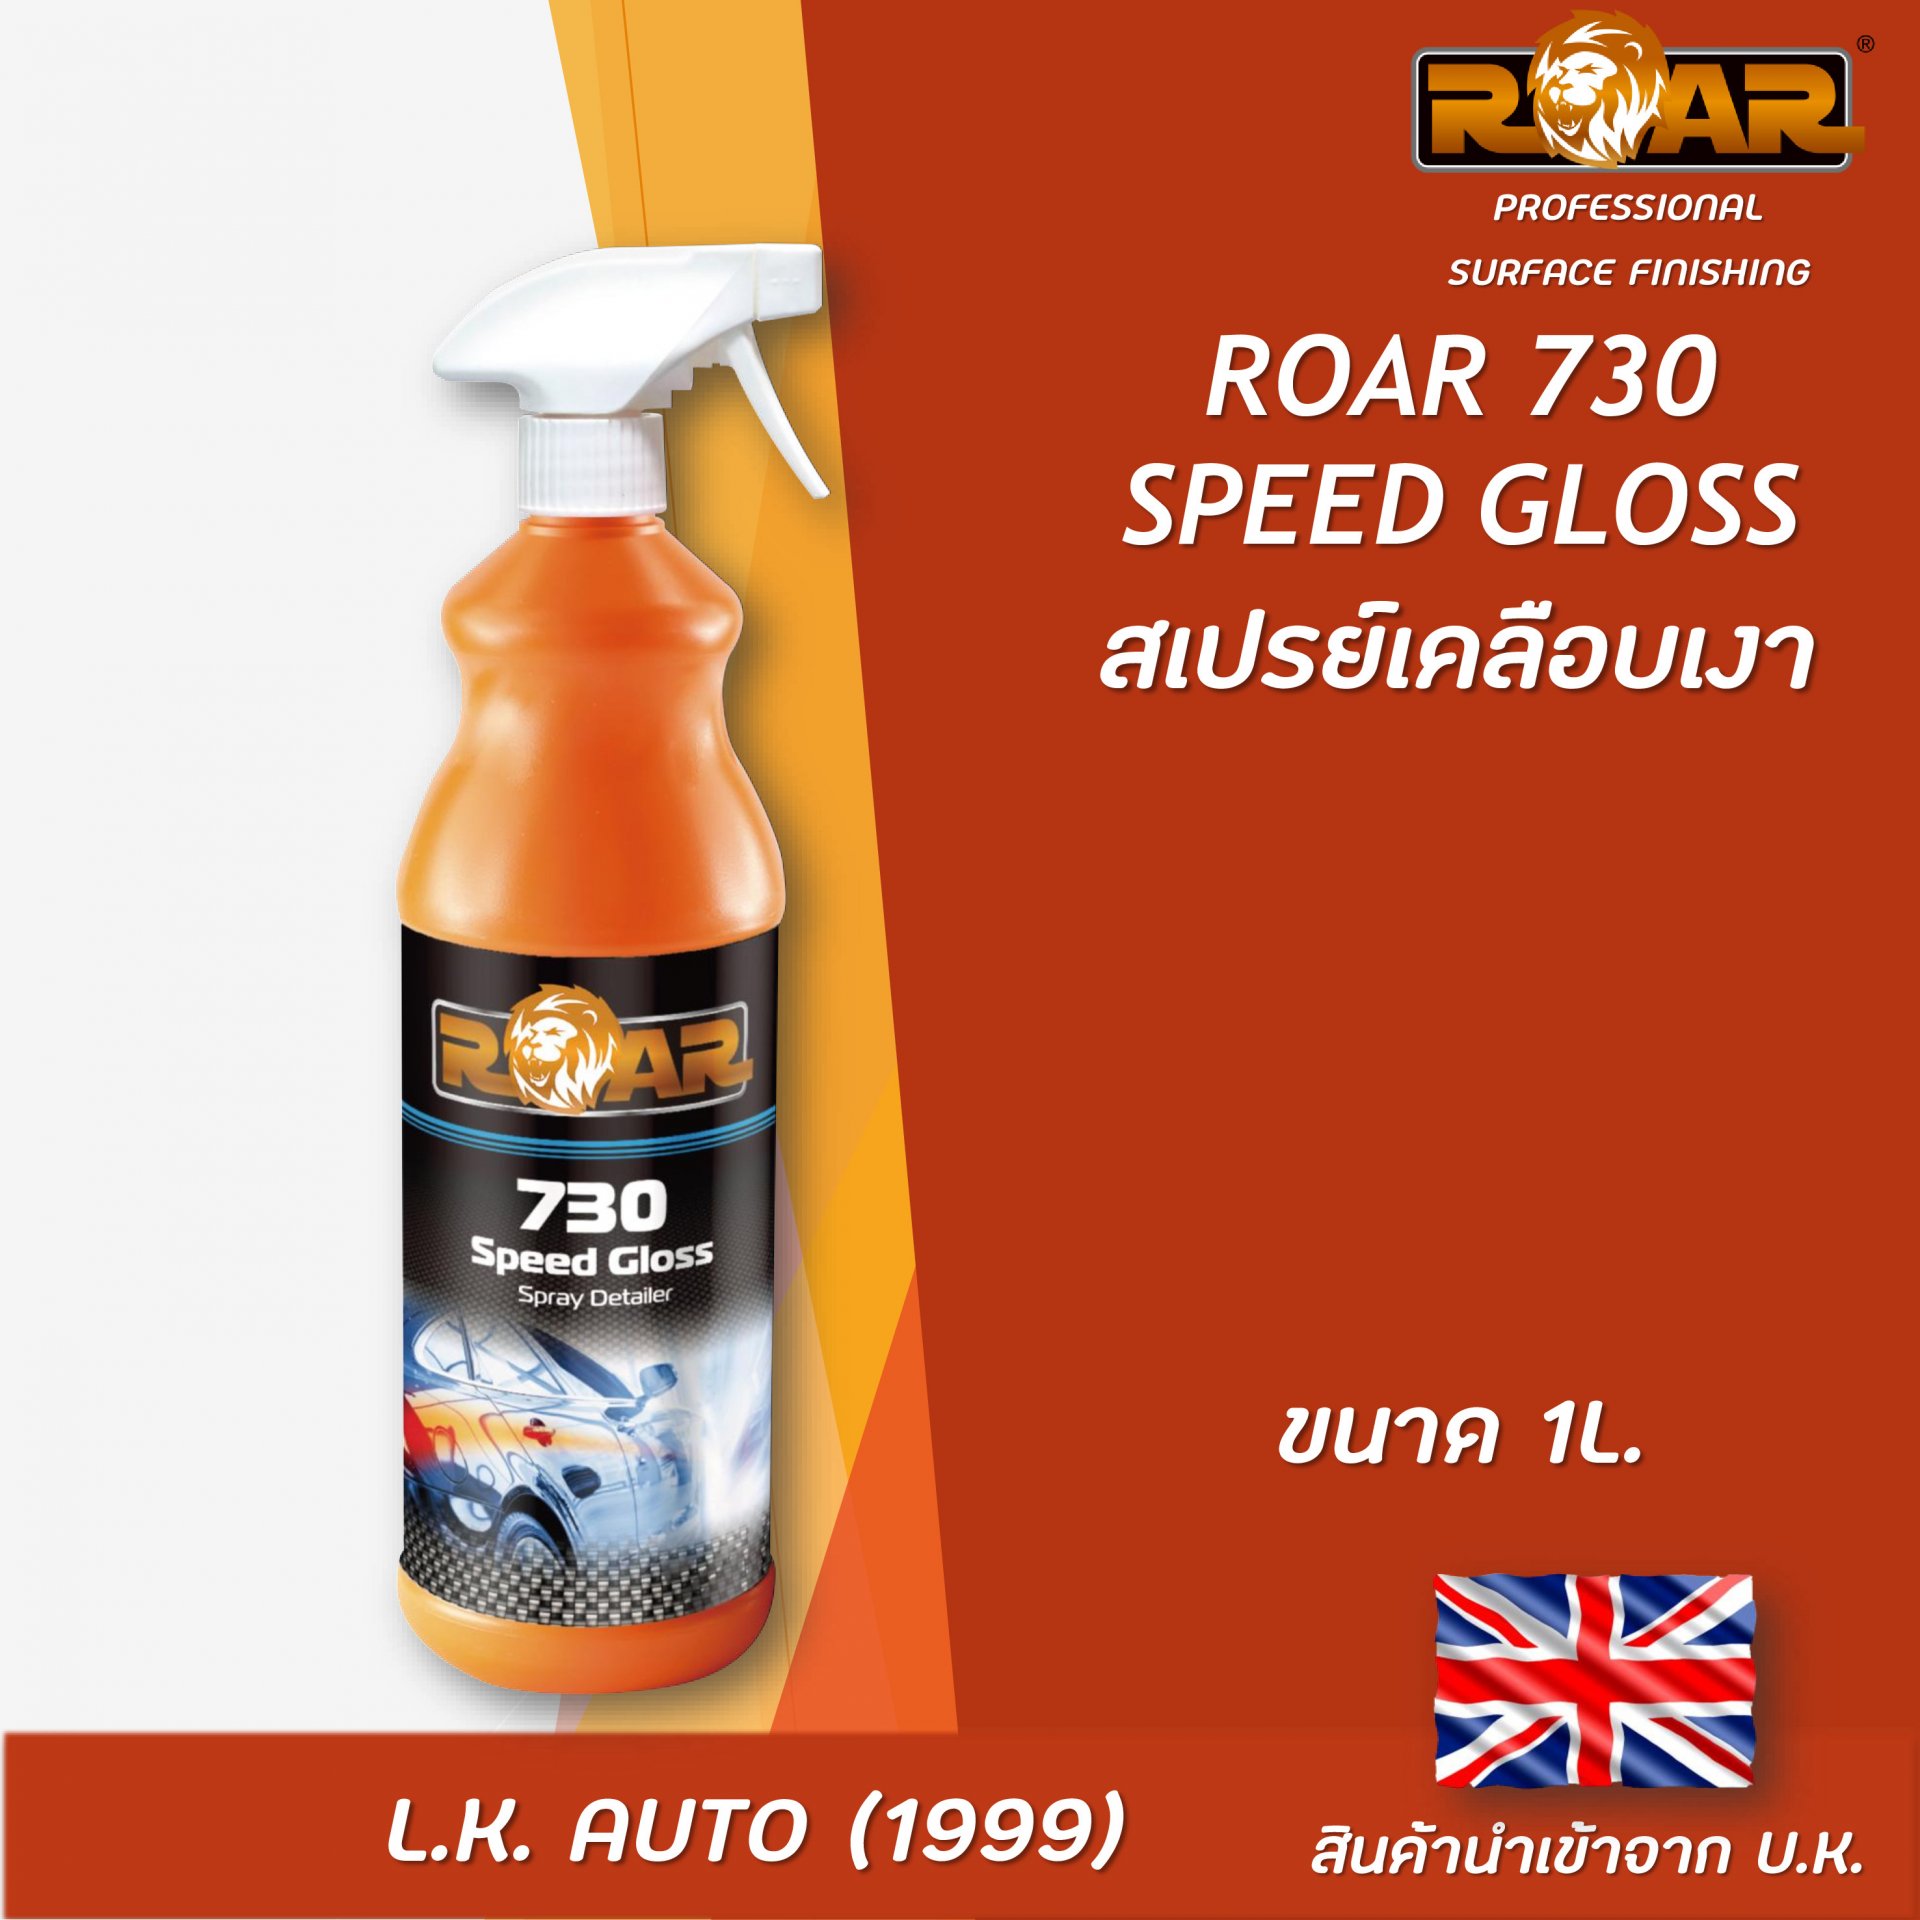 ROAR 730 Speed Gloss